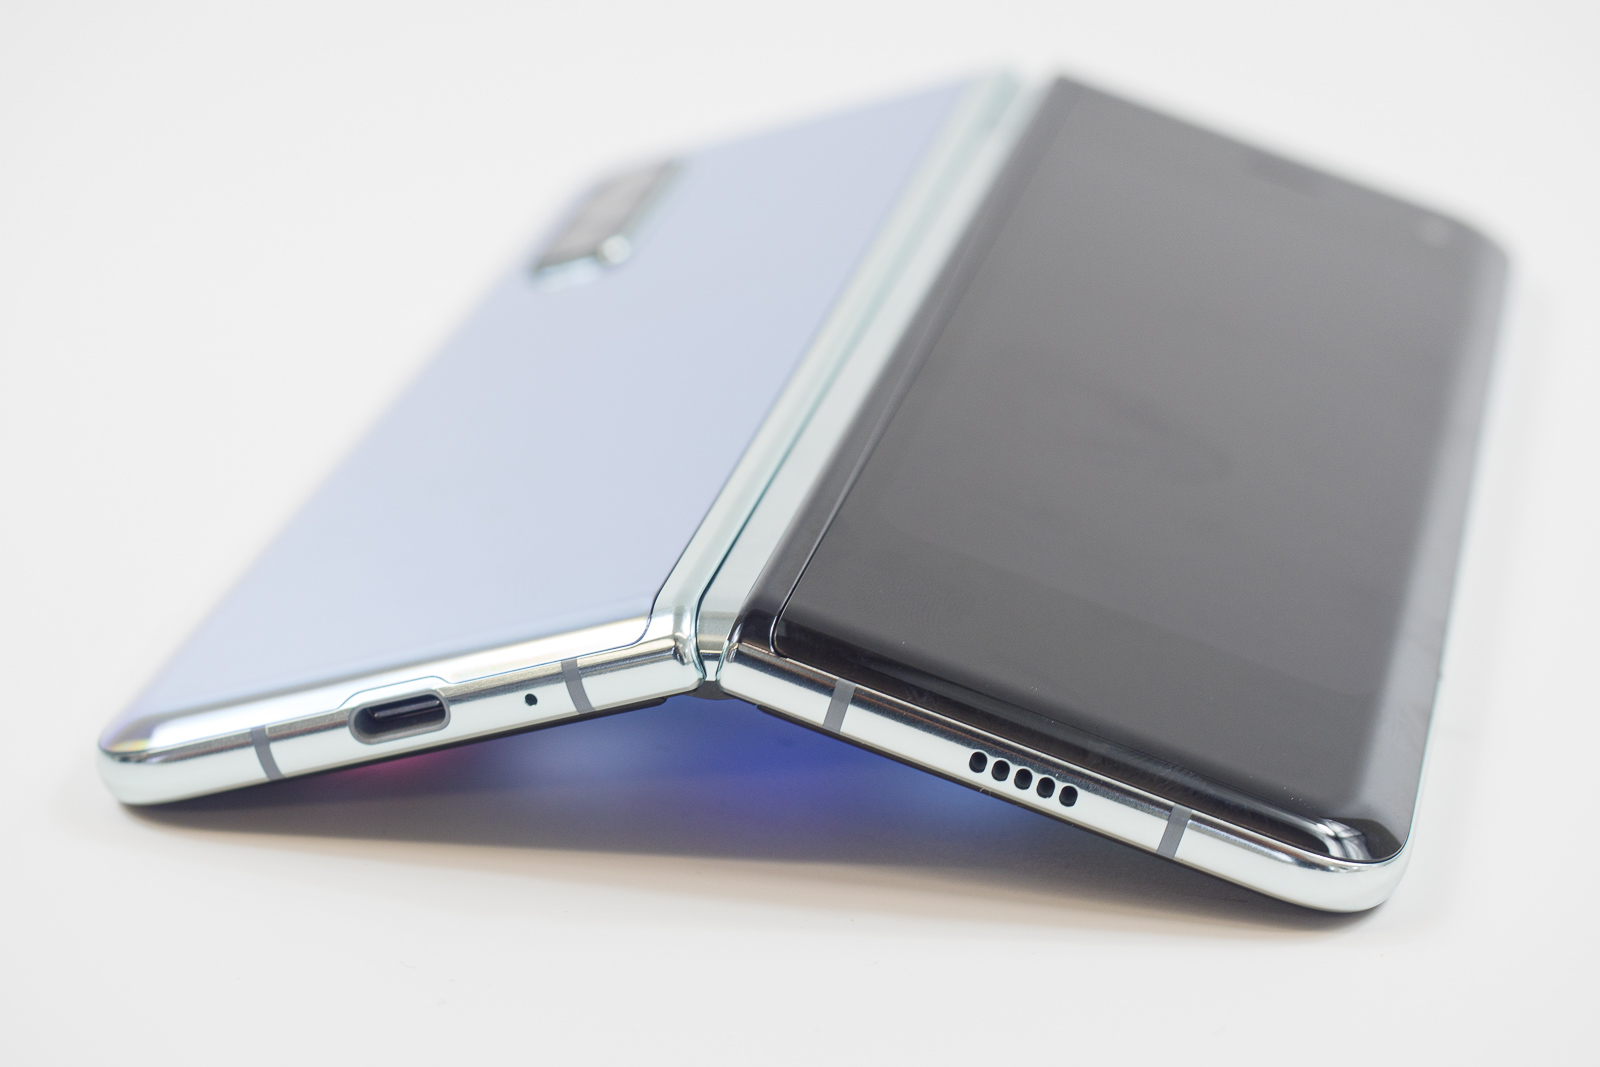 O FlexPai 2 me faz pensar Galaxy Fold 2  vai ser incrível, aqui está o porquê ...